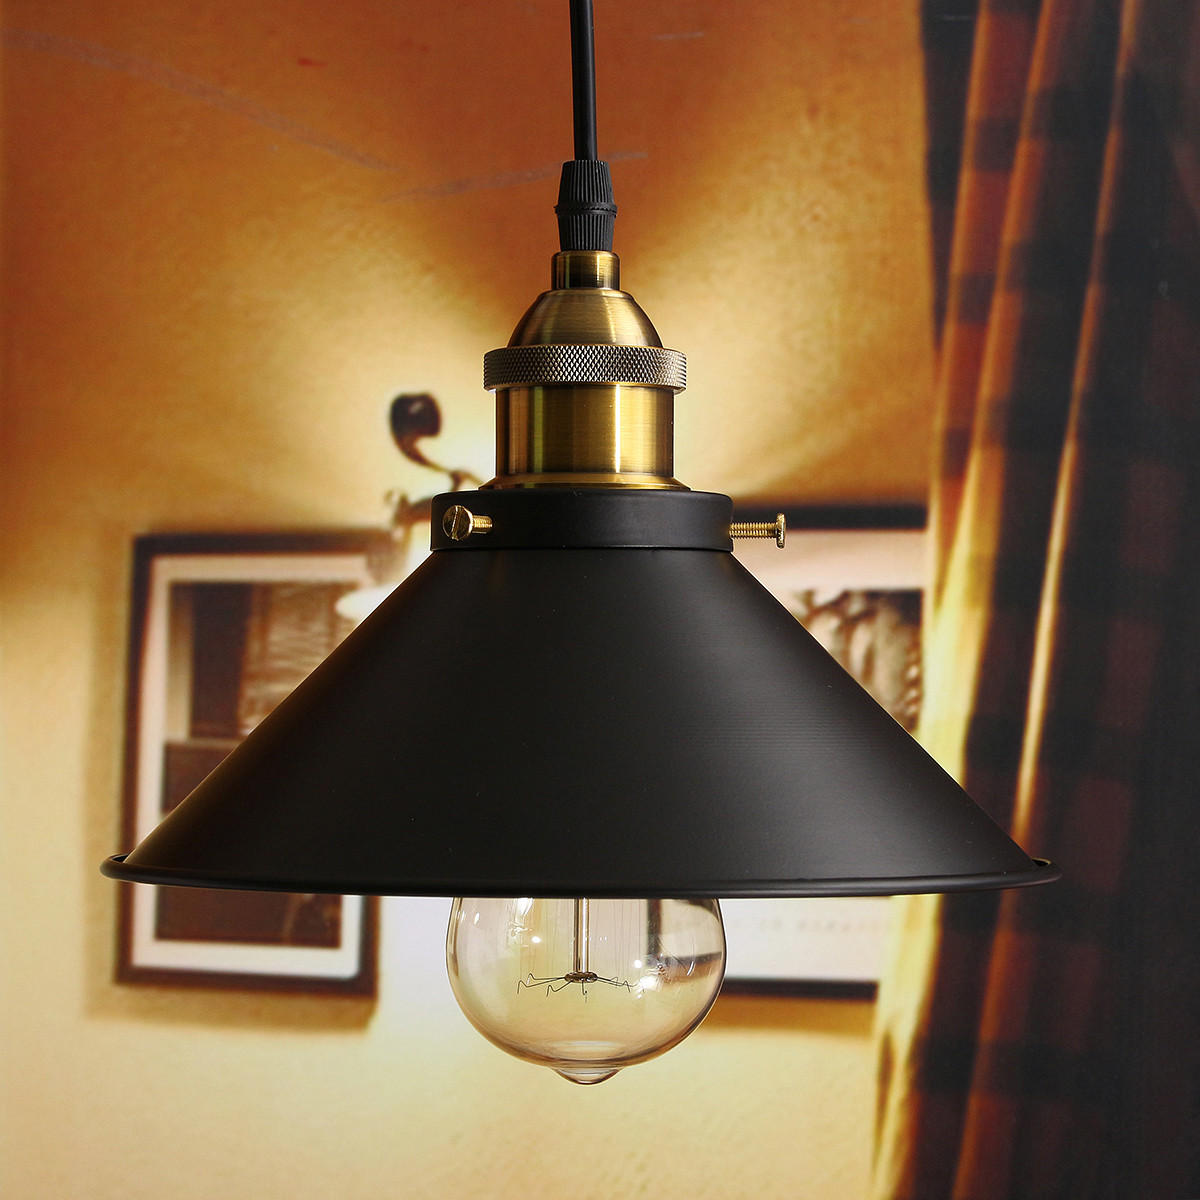 Fixture Ceiling Lamp Retro Industrial Iron Vintage Pendant Light Deco Chandelier